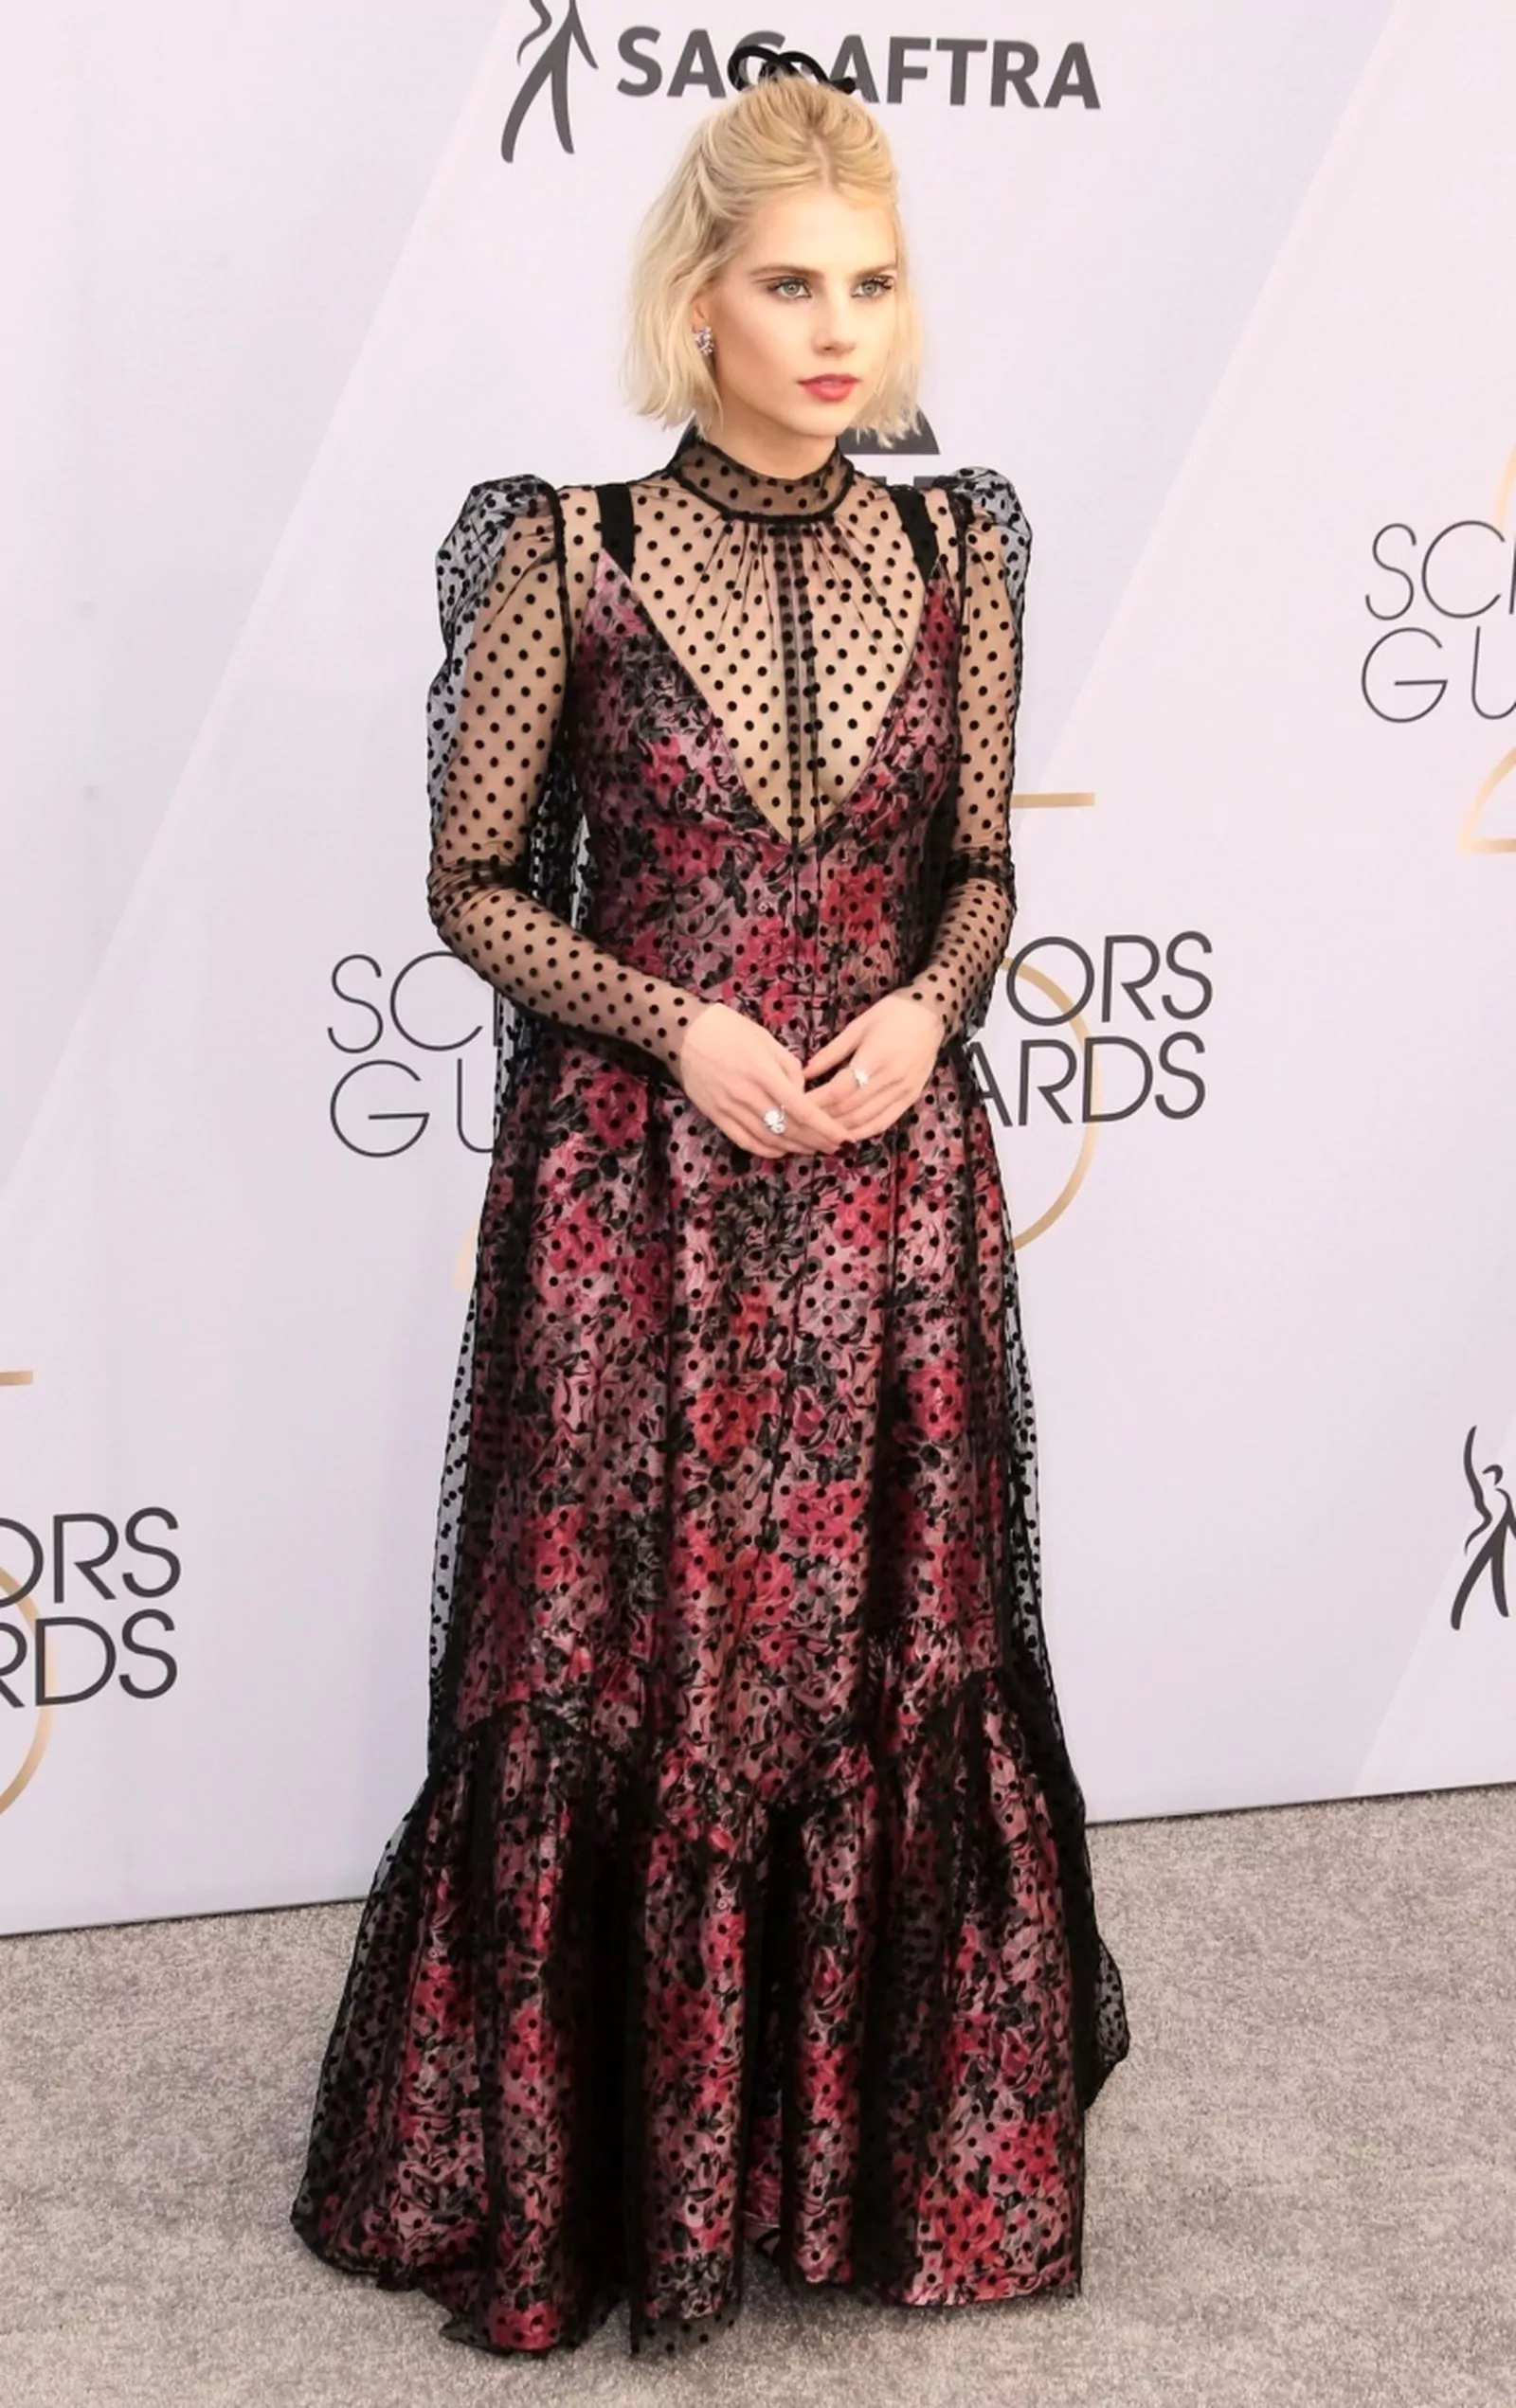 Люси Бойнтон на церемонии вручения премий SAG Awards 2019 в Лос-Анджелесе, 27 января 2019 г., фото 3